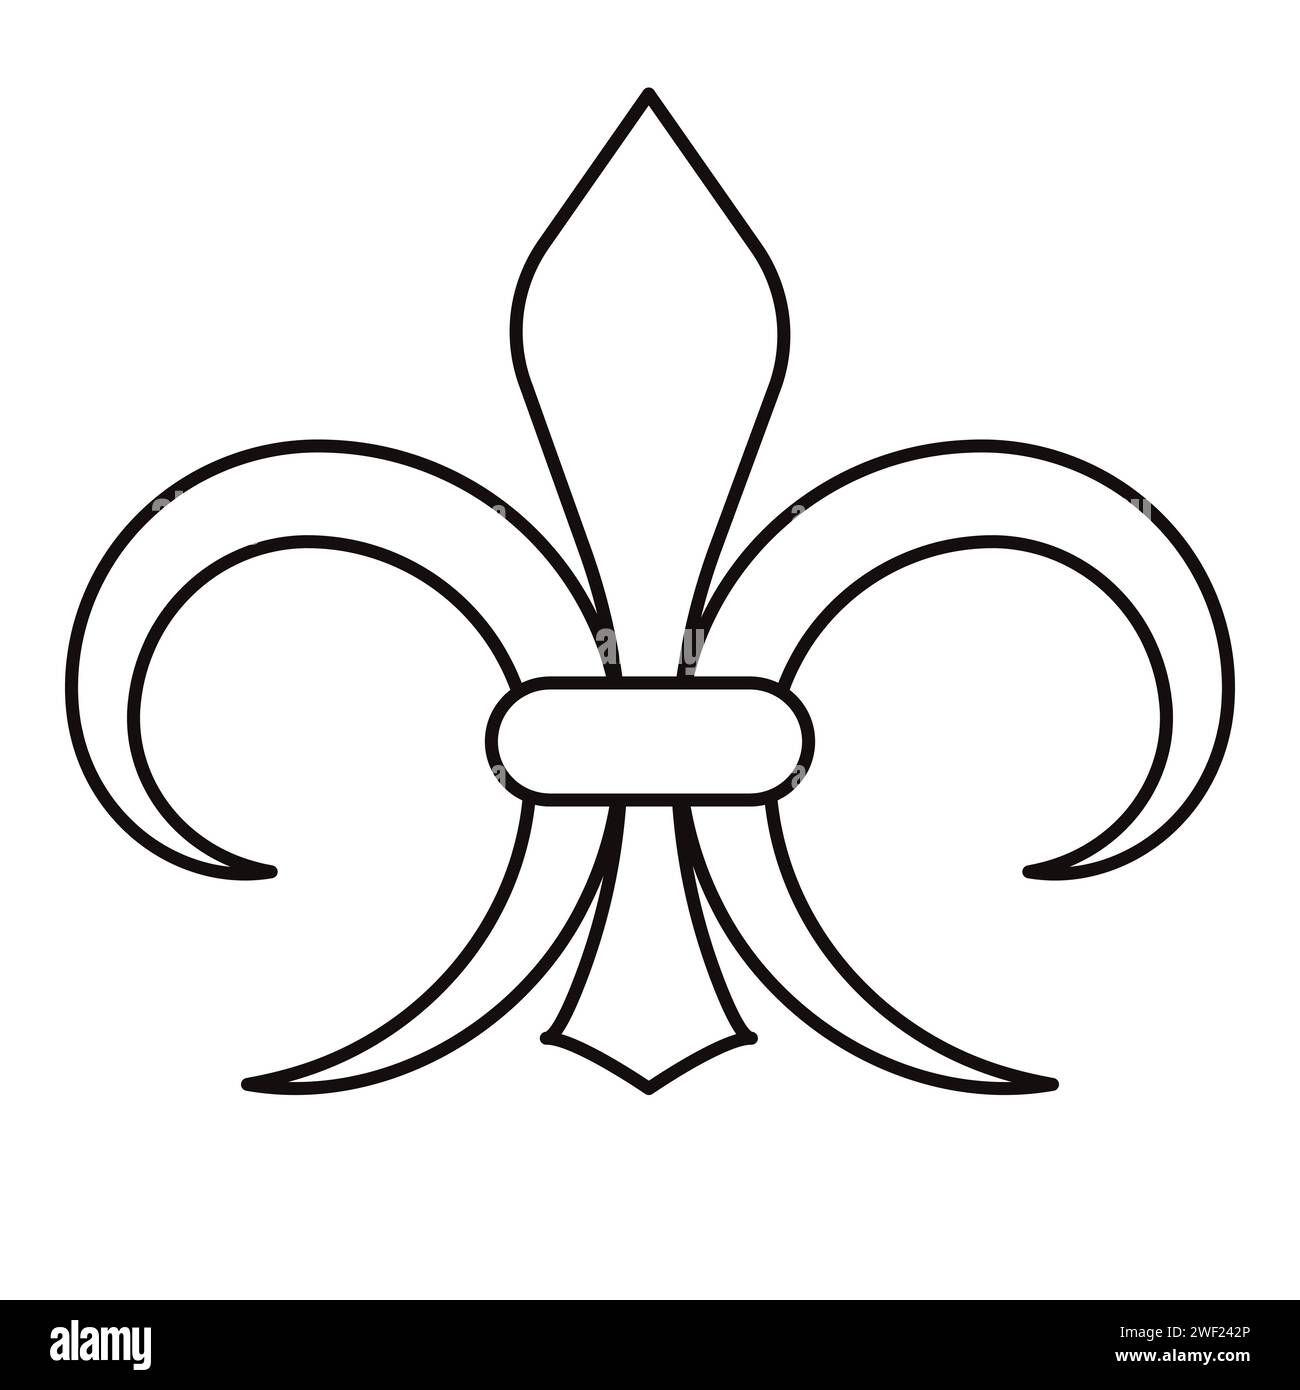 Icona Fleur De Lis Line elemento di design nero illustrazione vettoriale isolata su sfondo bianco Illustrazione Vettoriale